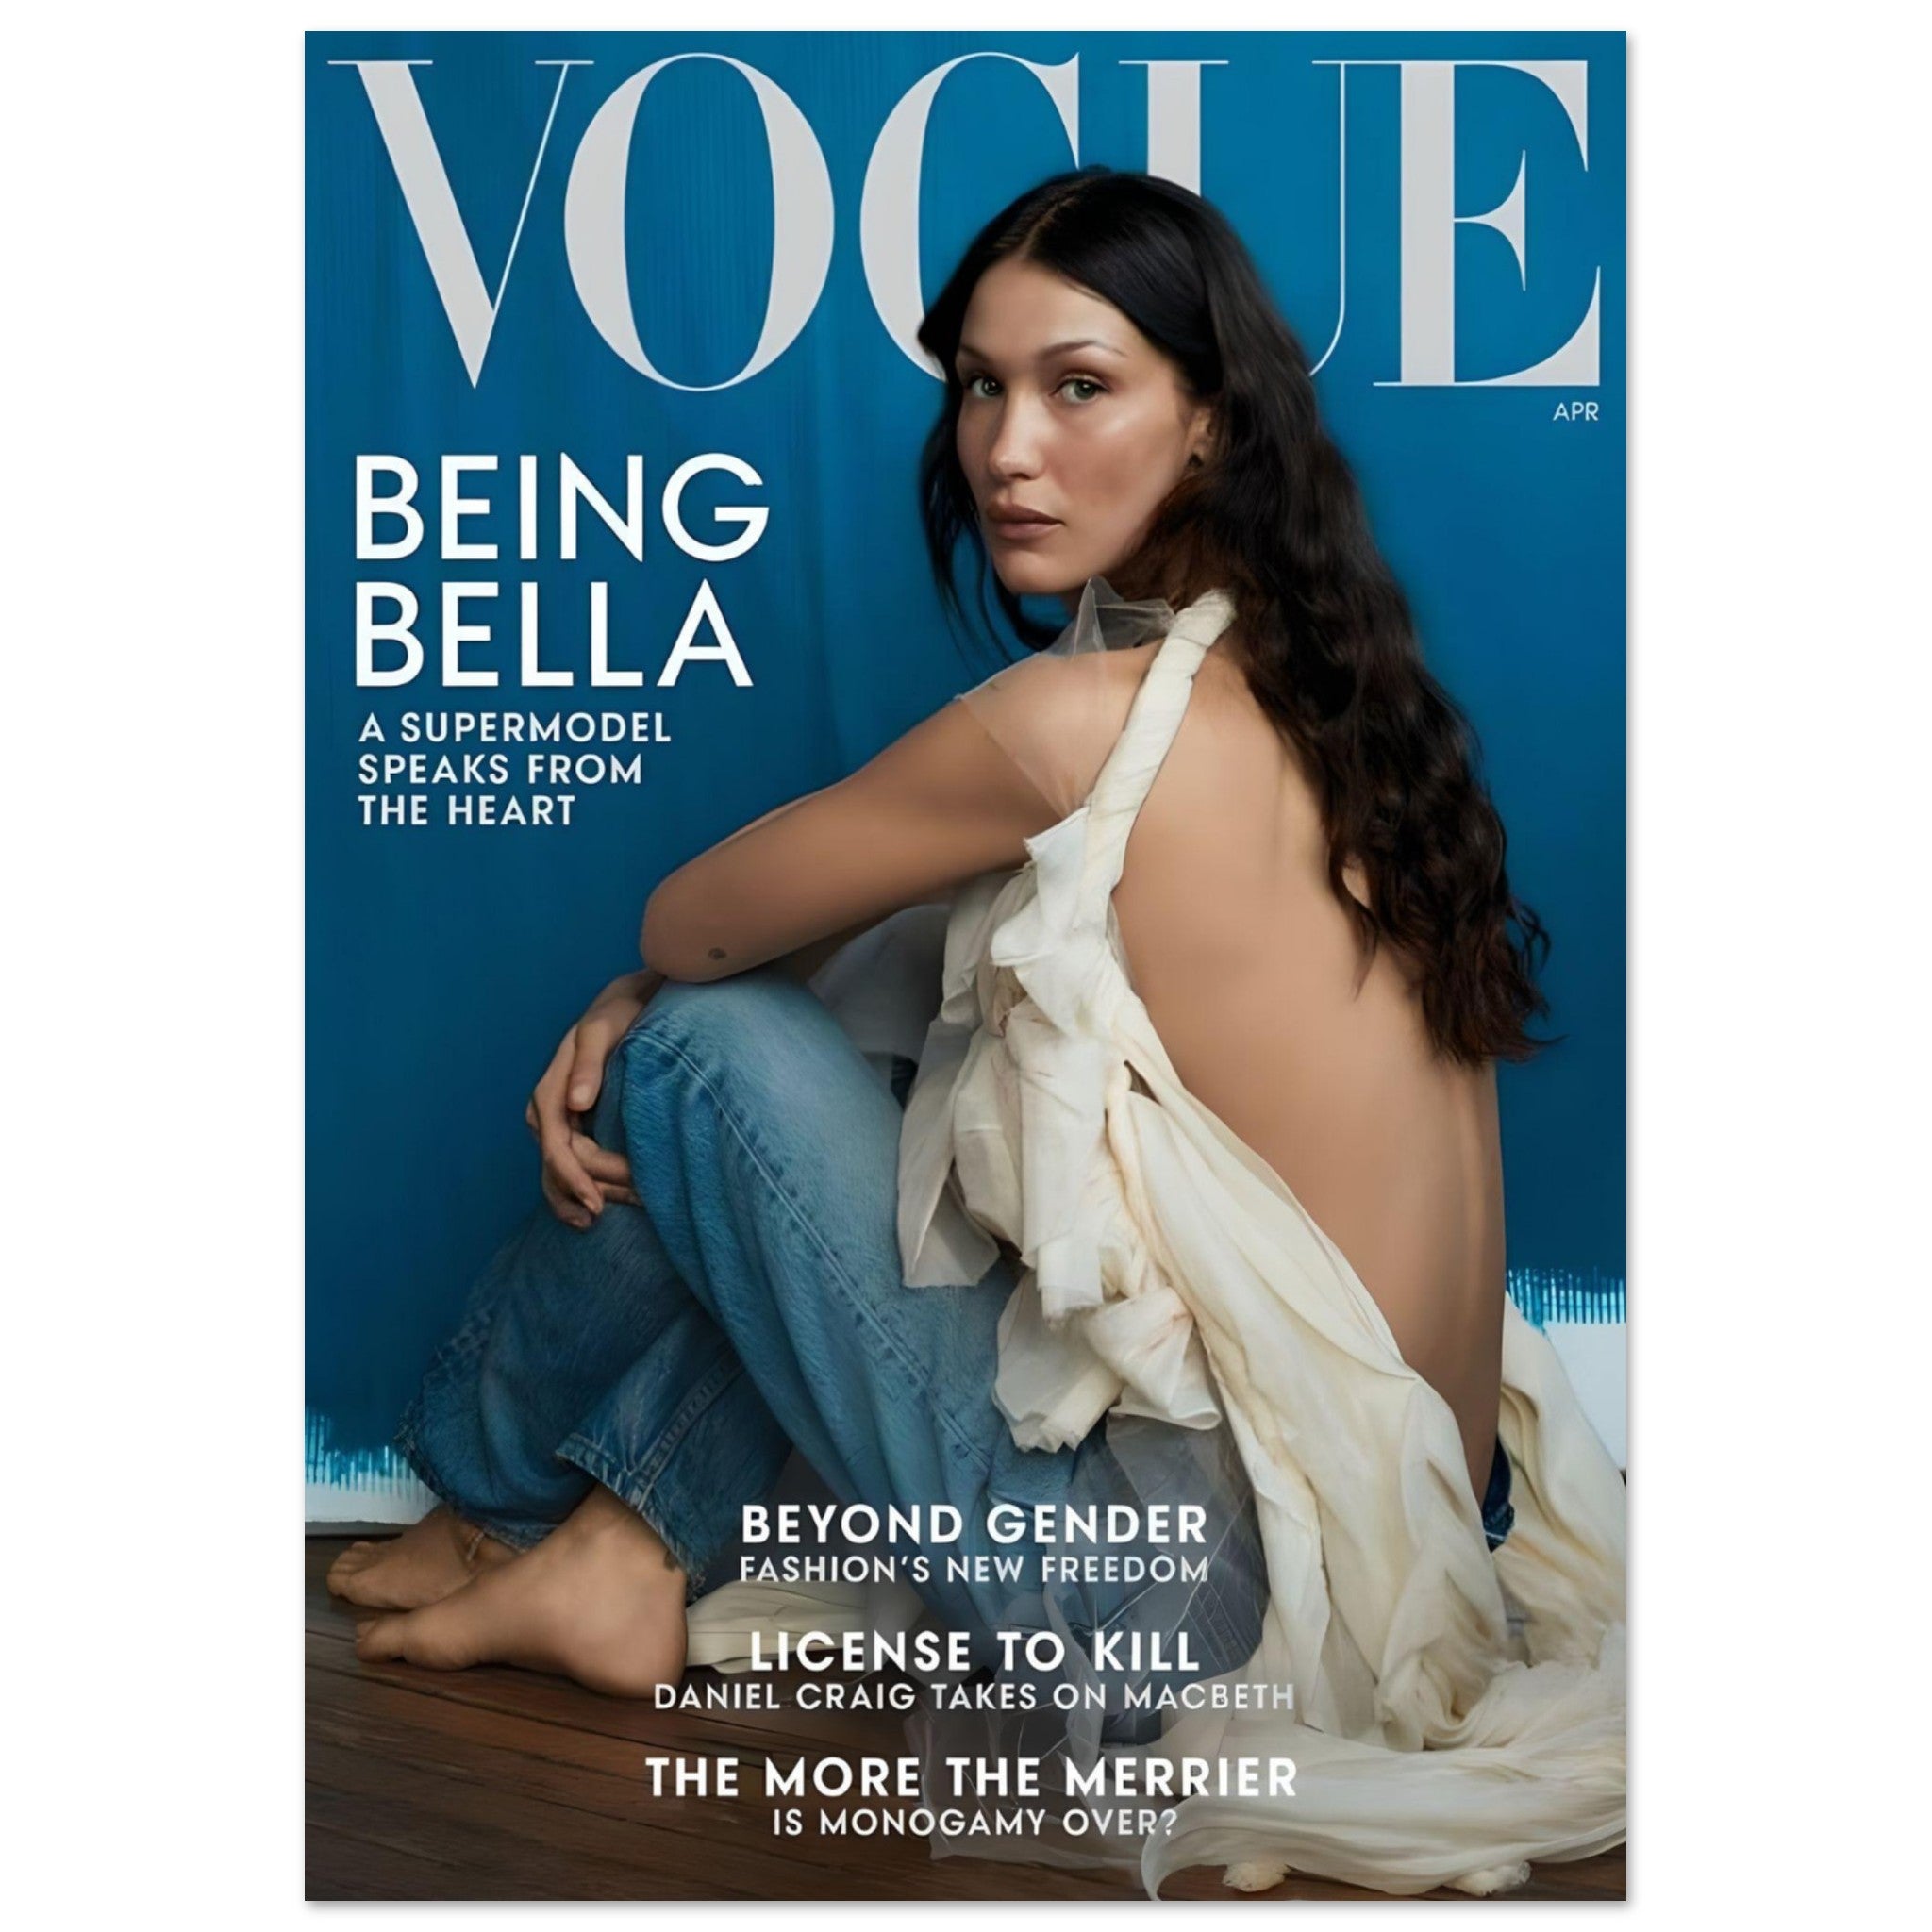 Vogue Portugal Magazine April 2022 - 女性情報誌